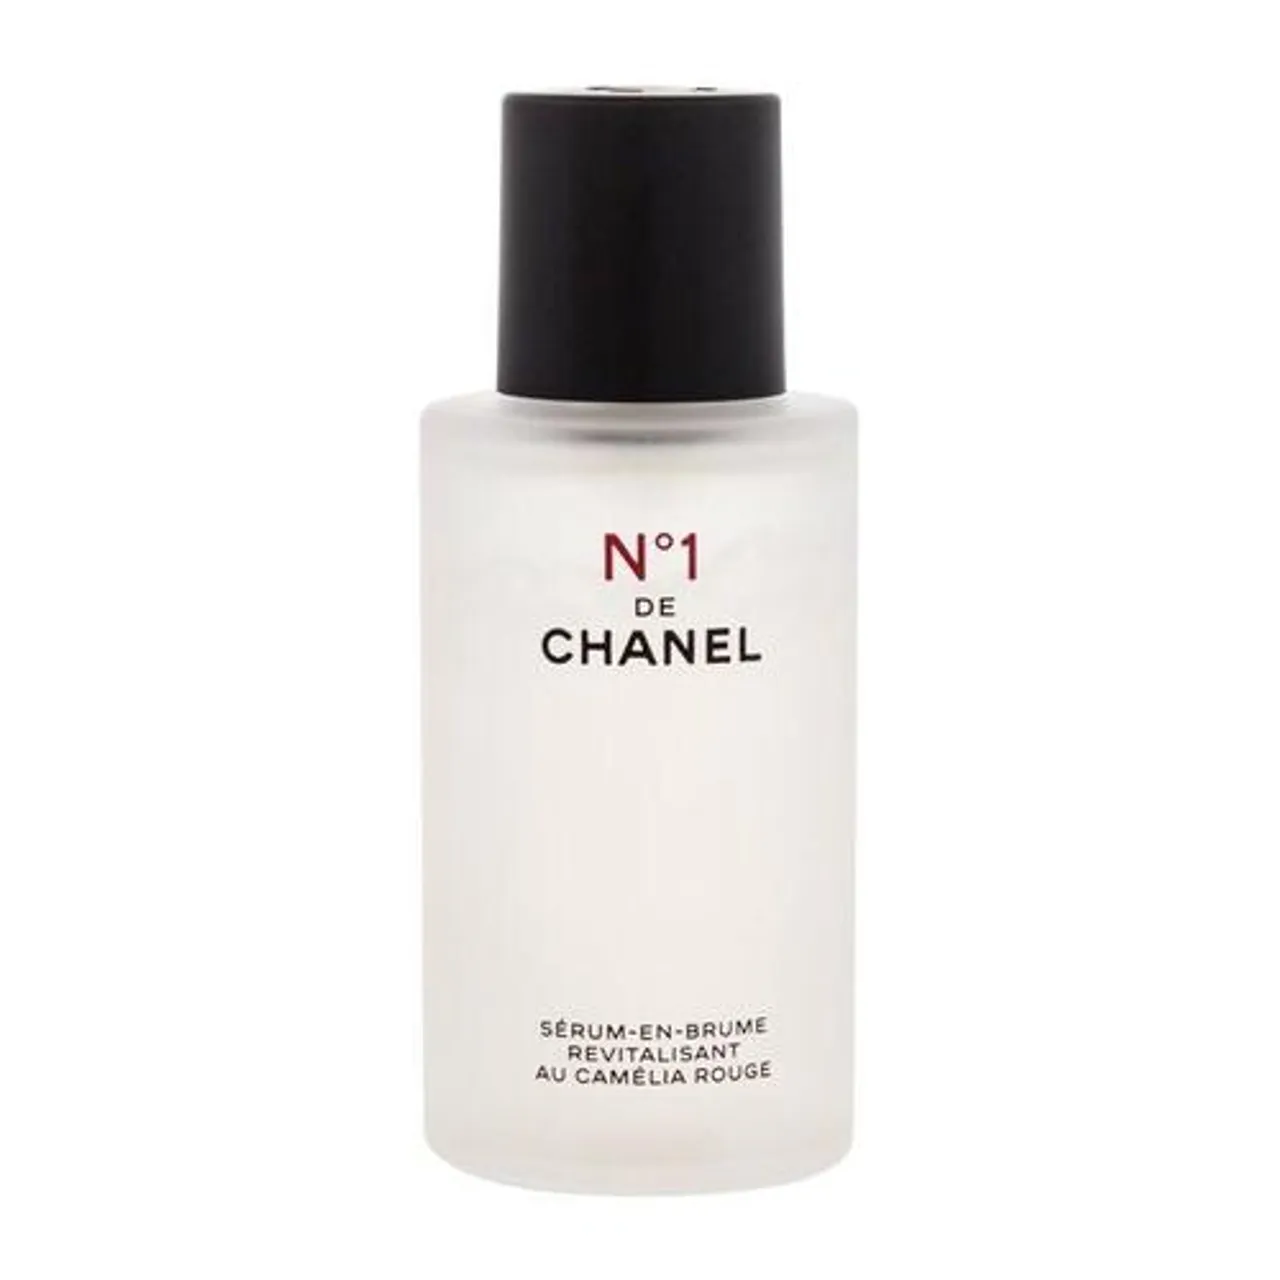 Chanel N°1 De Chanel Serum-En-Brume 50 ml